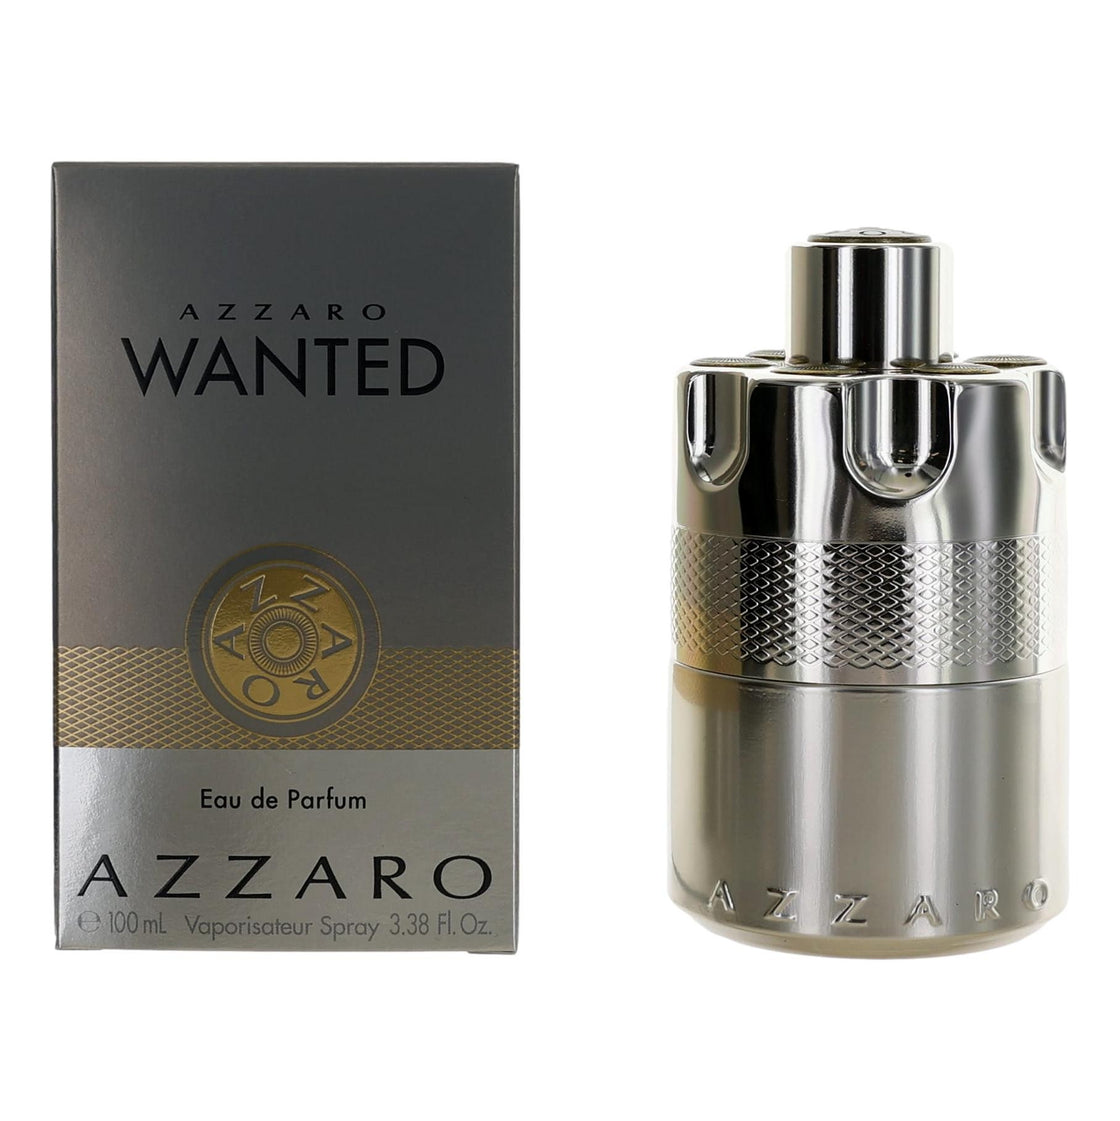 Azzaro Wanted By Azzaro, 3.38 Oz Eau De Parfum Spray For Men